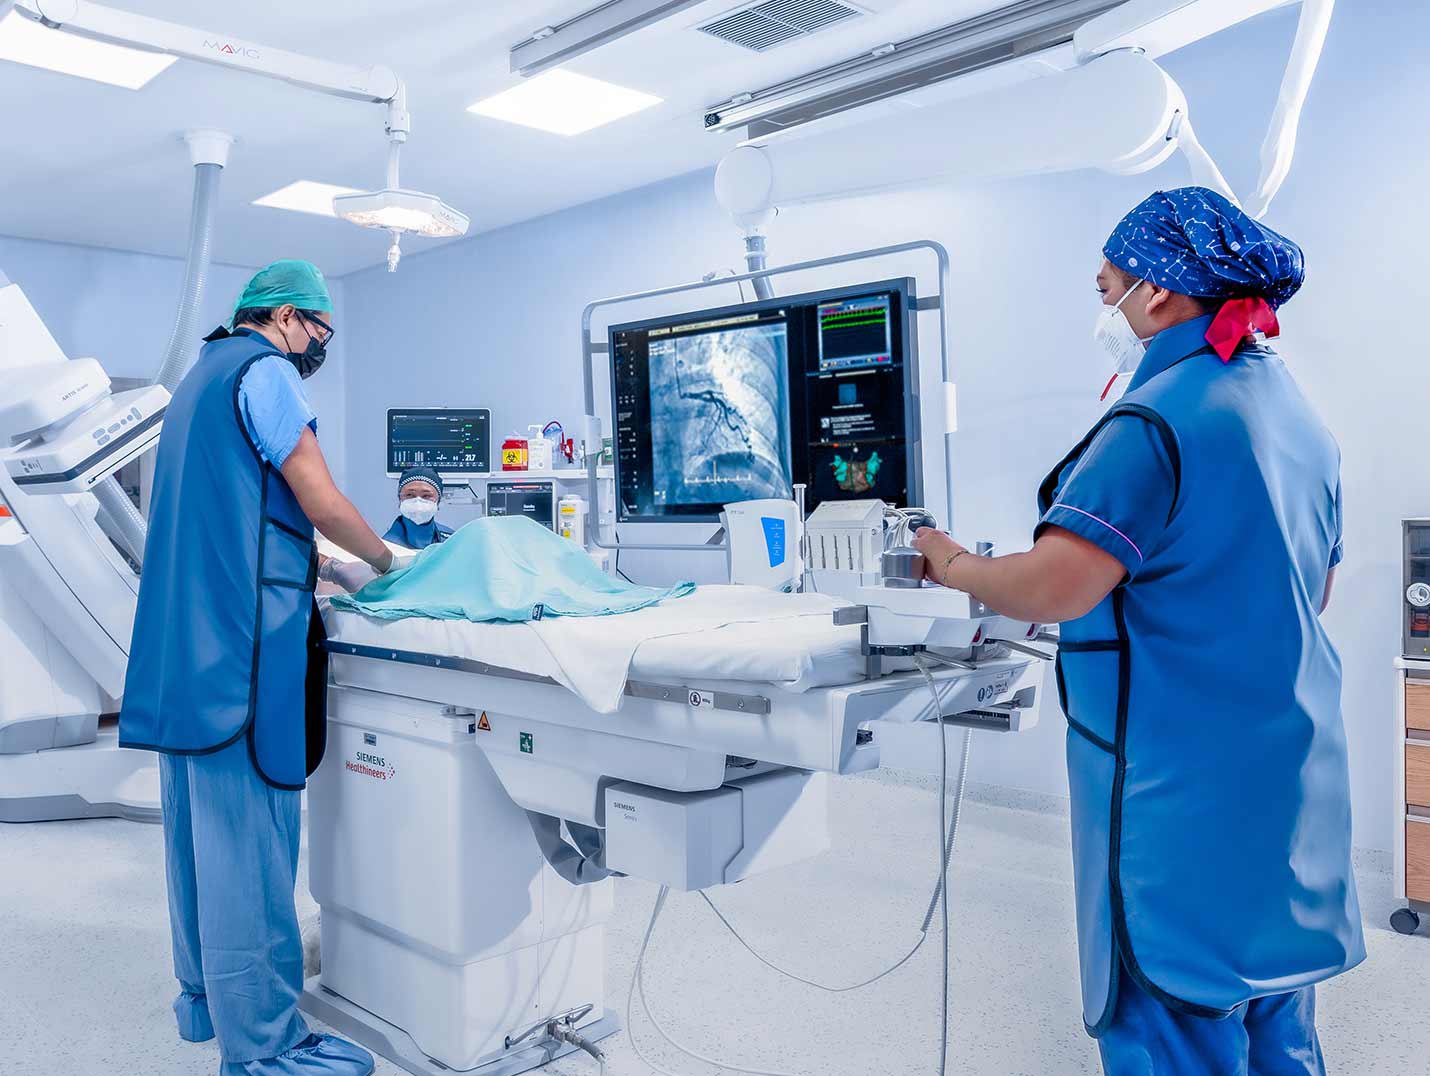 Tres médicos en la sala de hemodinamia vestidos con pijamas azules para cirugía y gorros. El monitor muestra una radiografía de tórax